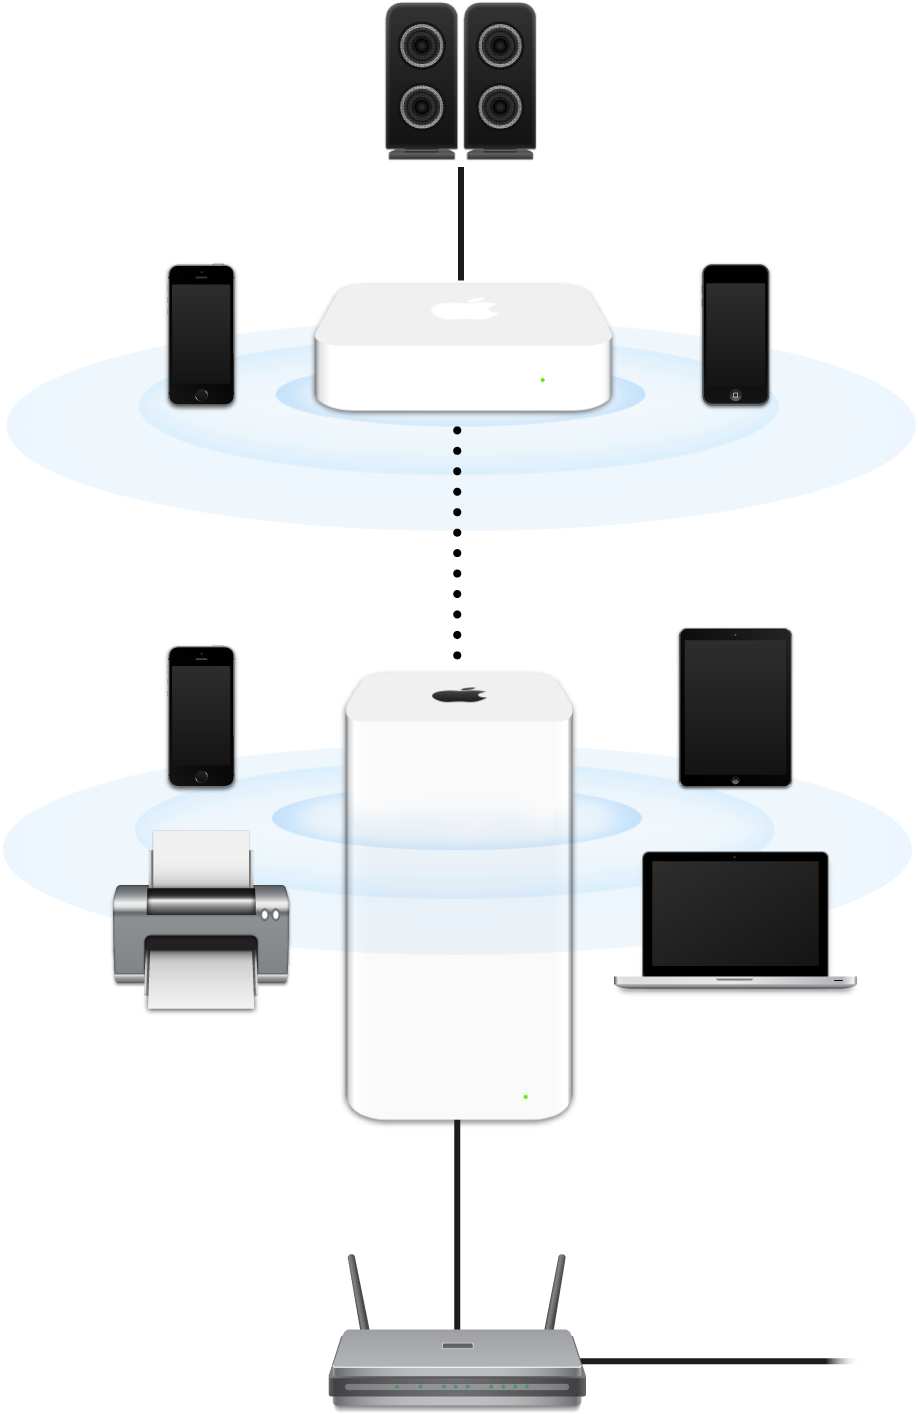 Розширена мережа, яка включає базові станції AirPort Extreme і AirPort Express, які під’єднані до модема й передають сигнал на різні пристрої.